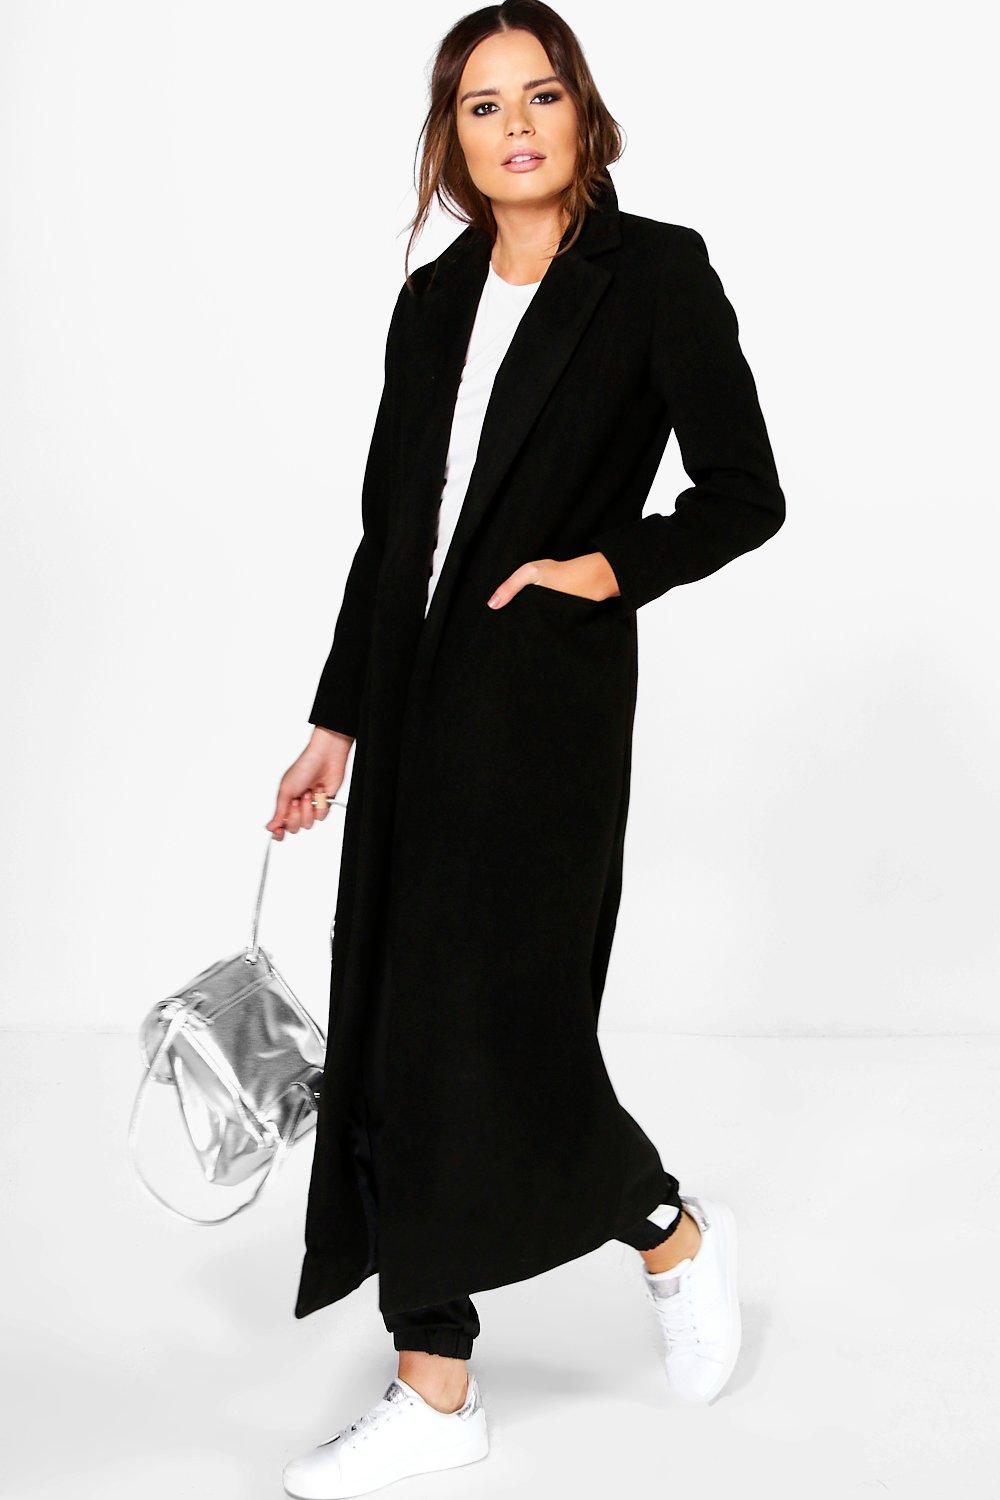 Boohoo Womens Keira Maxi Length Tailored Coat | eBay